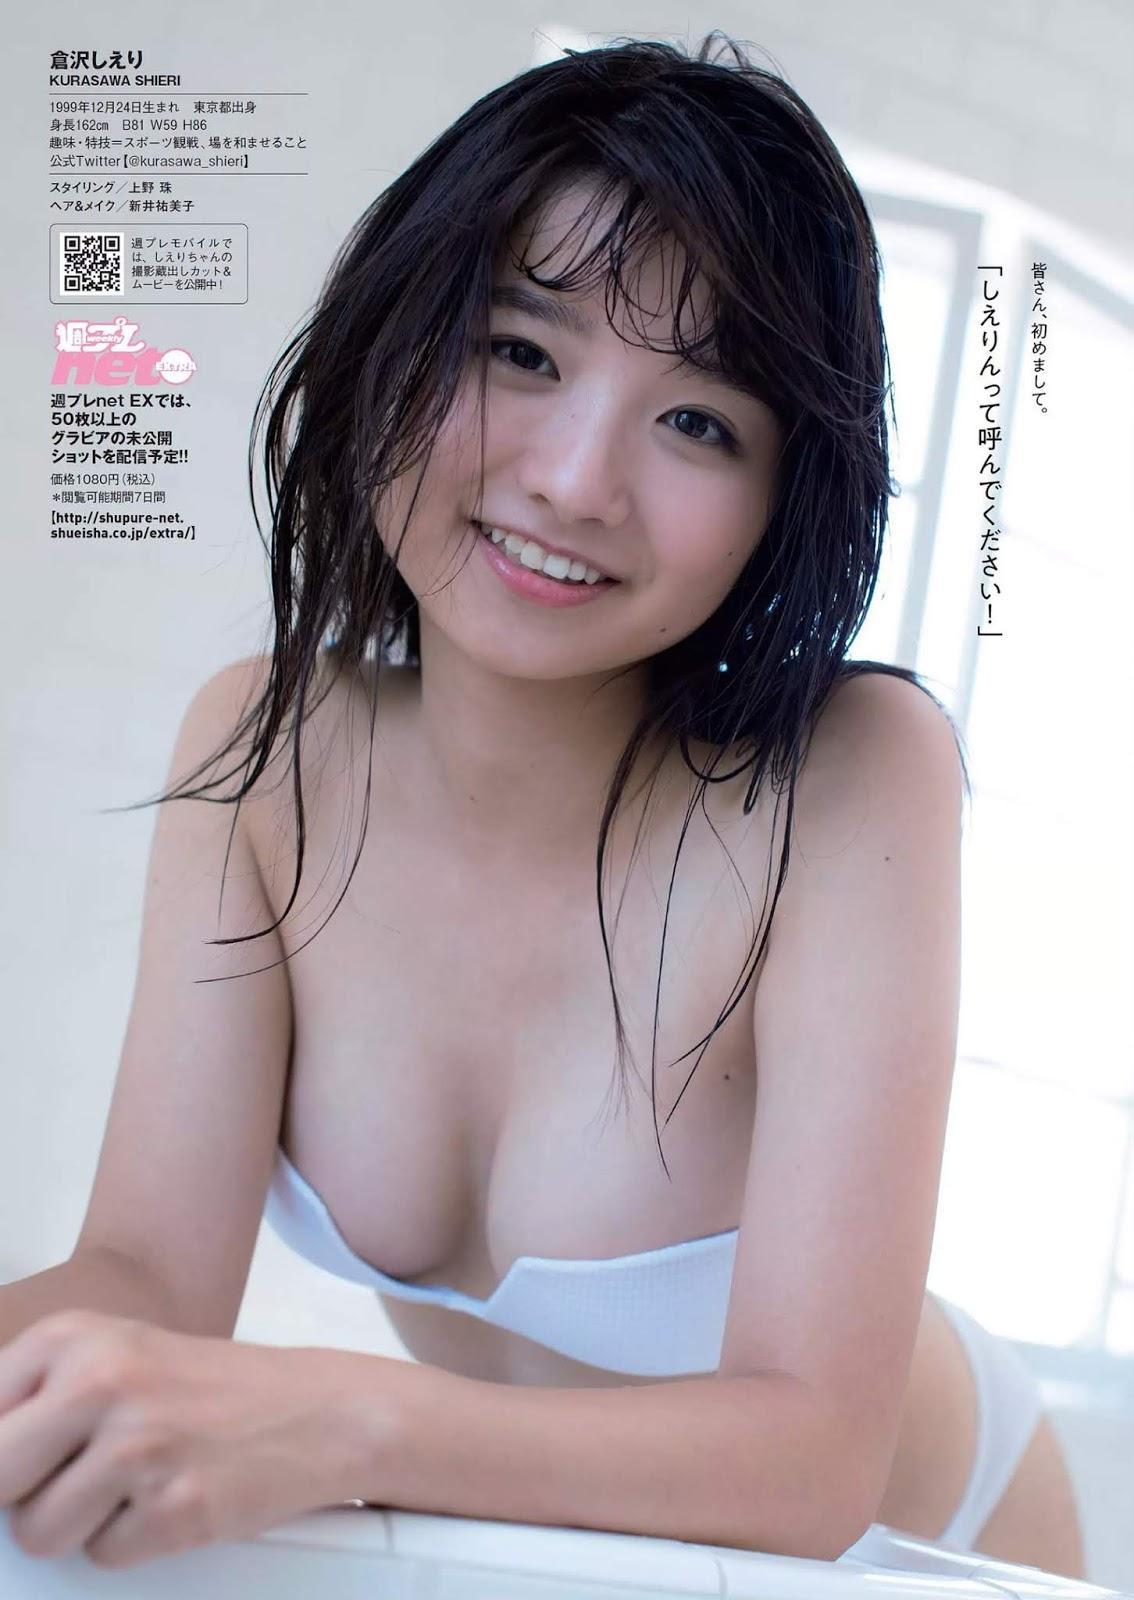 Shieri Kurasawa 倉沢しえり, Weekly Playboy 2018 No.50 (週刊プレイボーイ 2018年50号)(4)